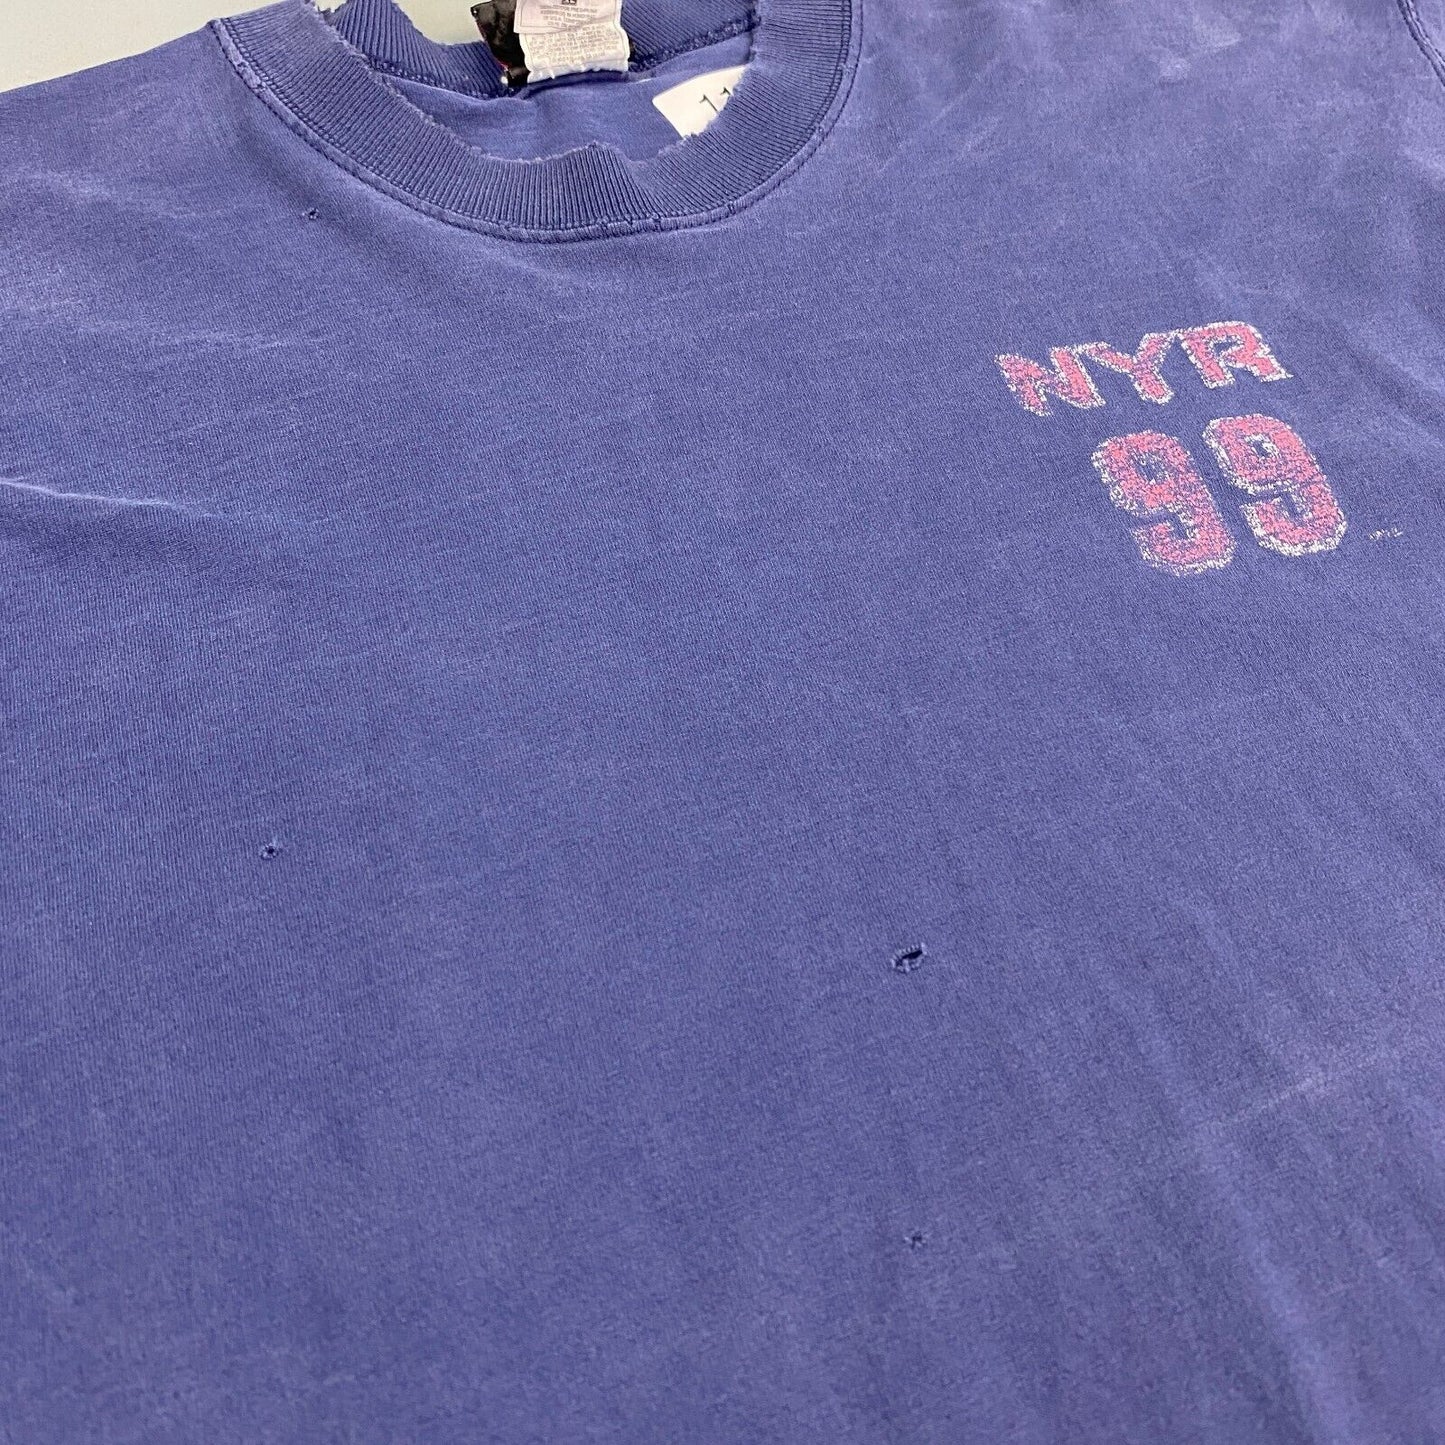 VINTAGE 90s NY Rangers Wayne Gretzky #99 Distressed Hockey T-Shirt sz XL Adult